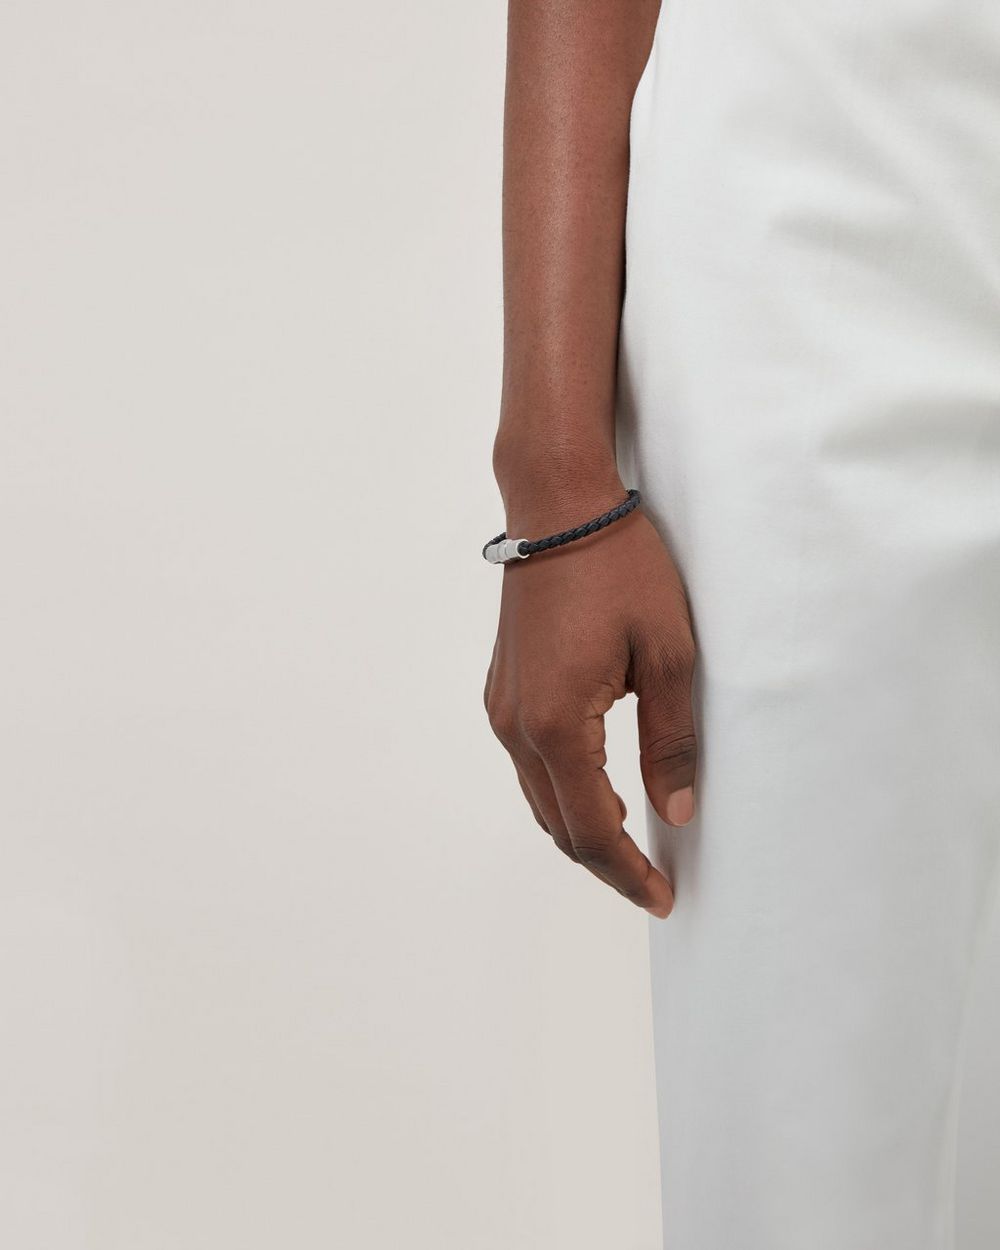 Cartier bracelet for men, black leather, double shine